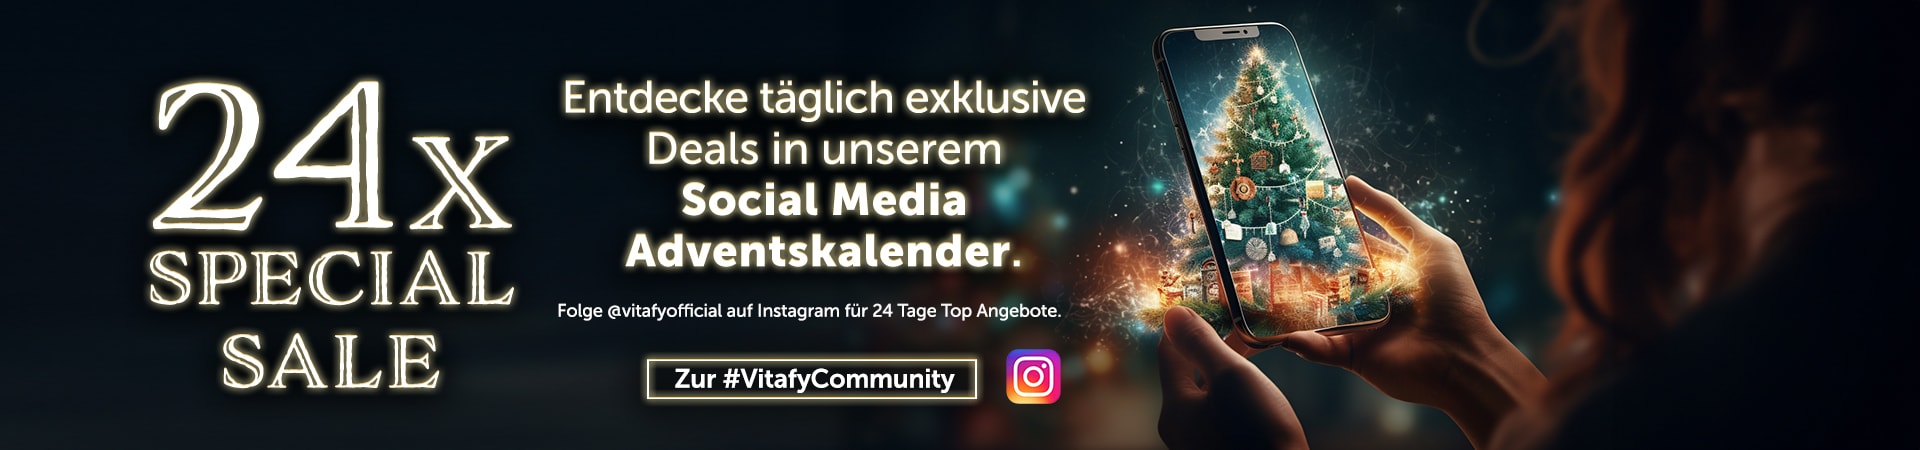 Entdecke den virtuellen Adventskalender von vitafy auf Instagram und öffne jeden Tag ein neues Türchen!